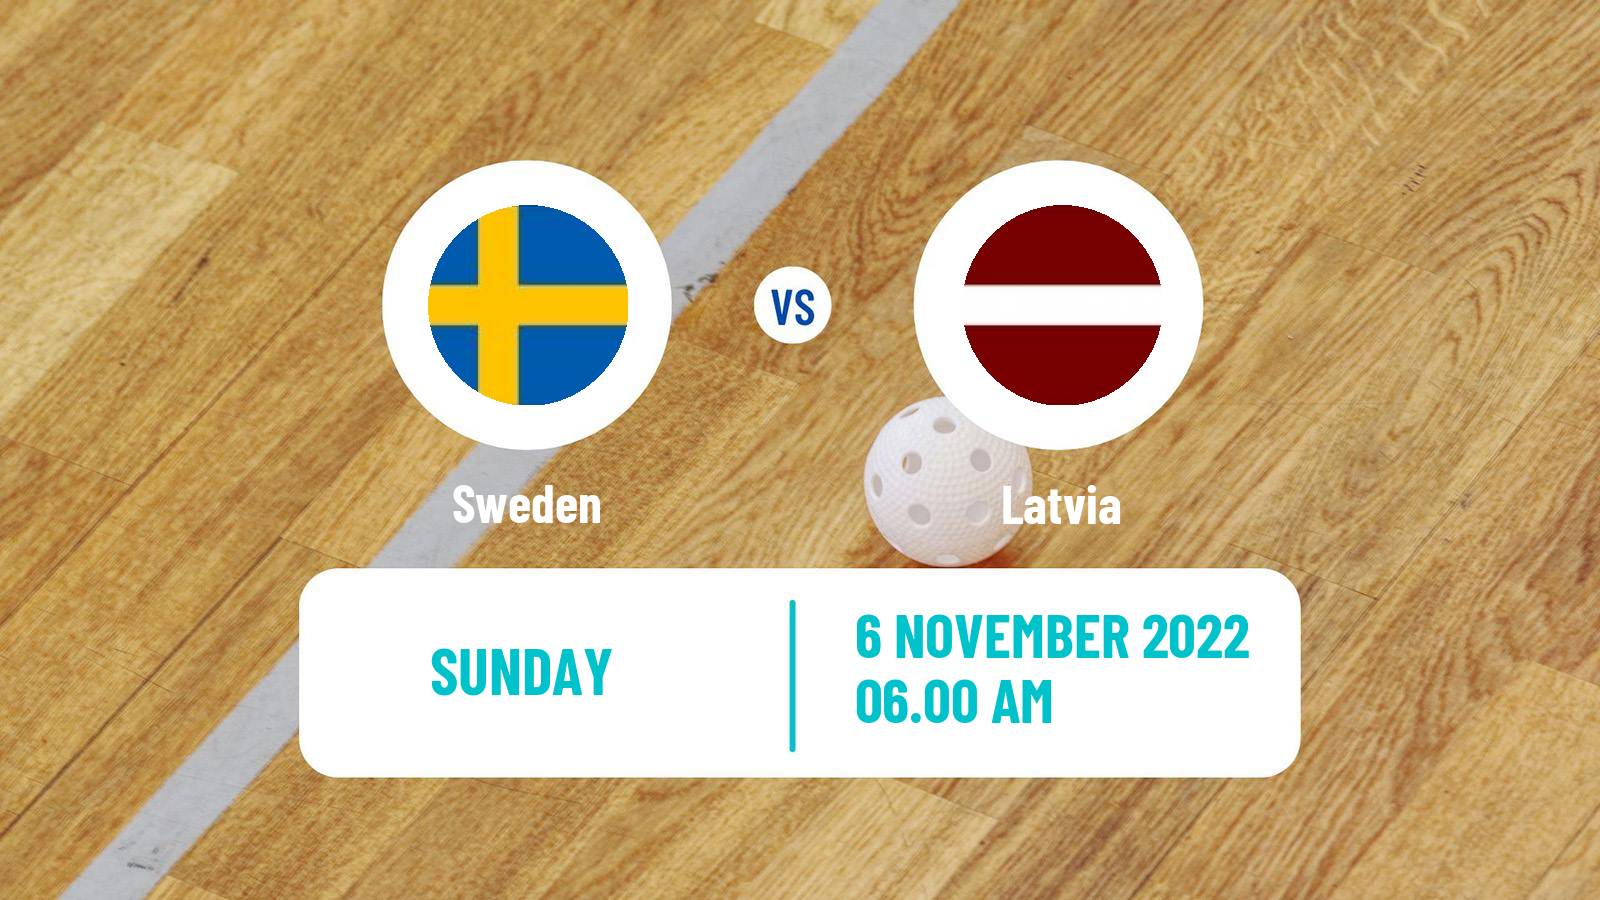 Floorball World Championship Floorball Sweden - Latvia